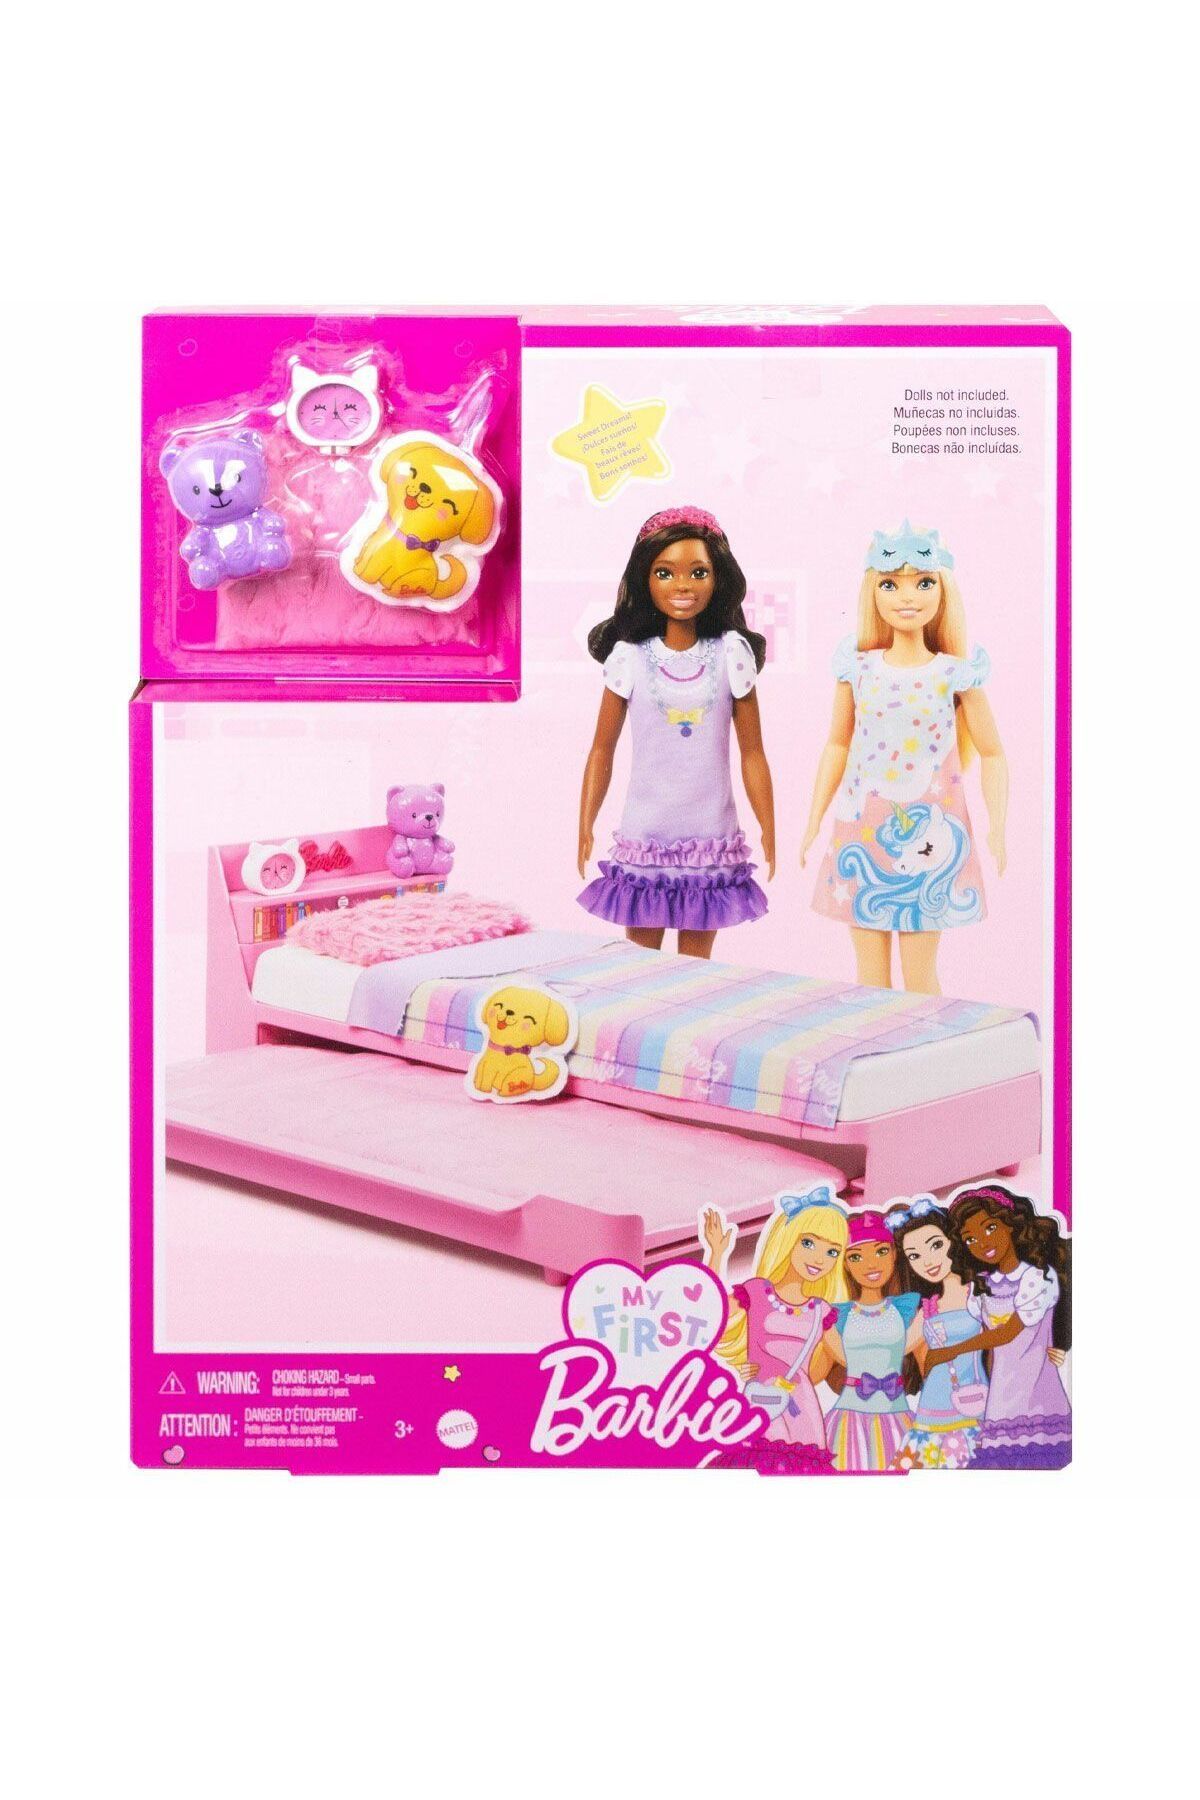 Barbie Hmm64 My First Barbie - İlk Barbie Bebeğim - Barbie'nin Yatağı Oyun Seti